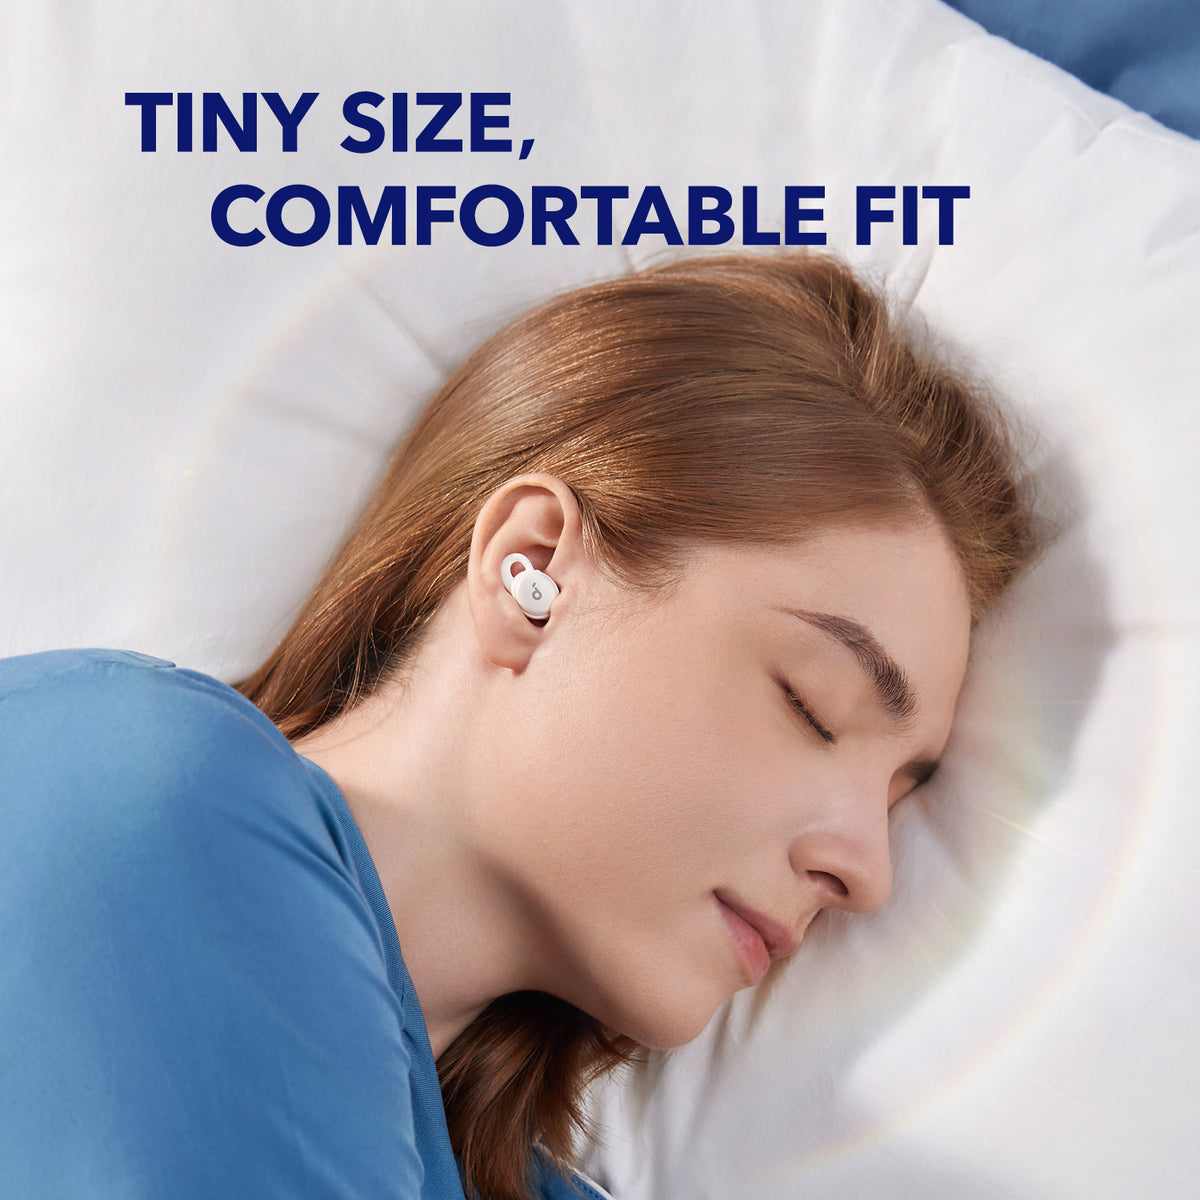 Des écouteurs pour mieux dormir? Pourquoi pas!